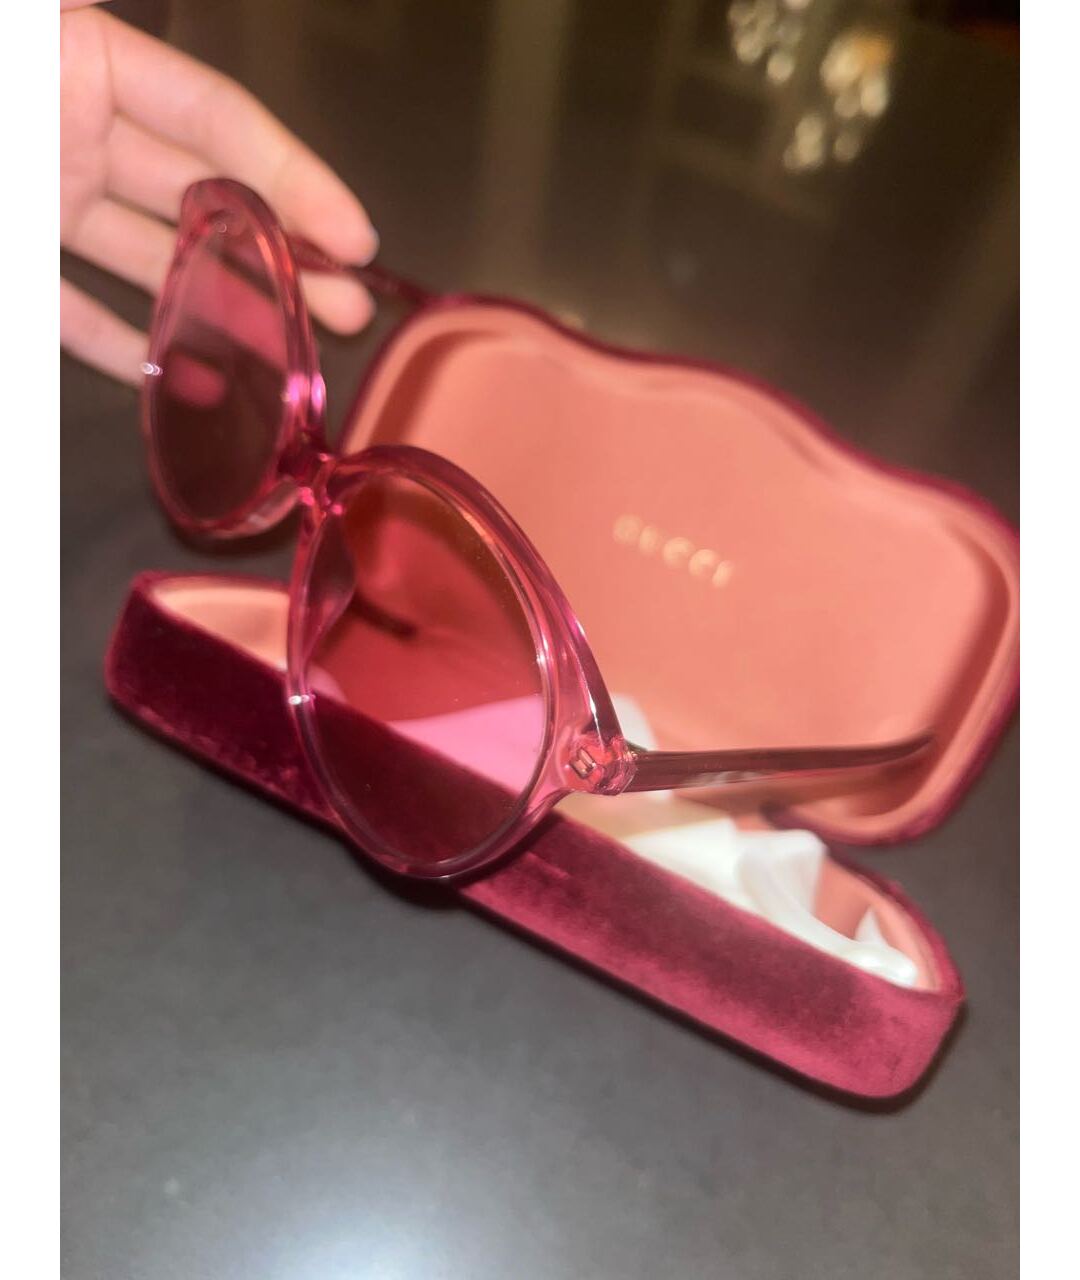 GUCCI Розовые солнцезащитные очки, фото 2